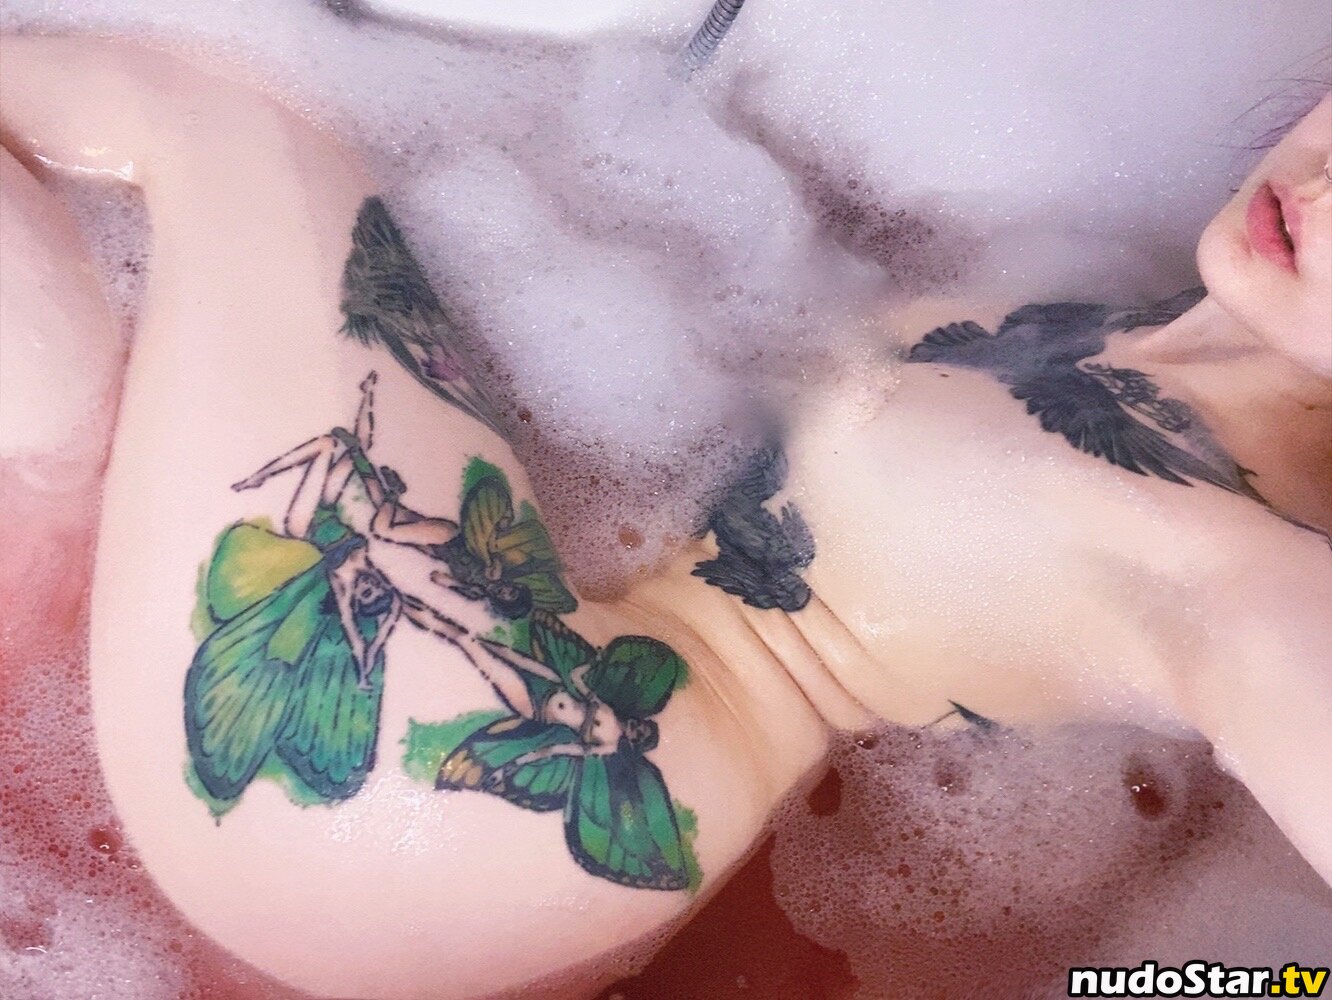 https://nudostar.tv/contents/f/a/faerie-blossom/1000/faerie-blossom_0177.jpg